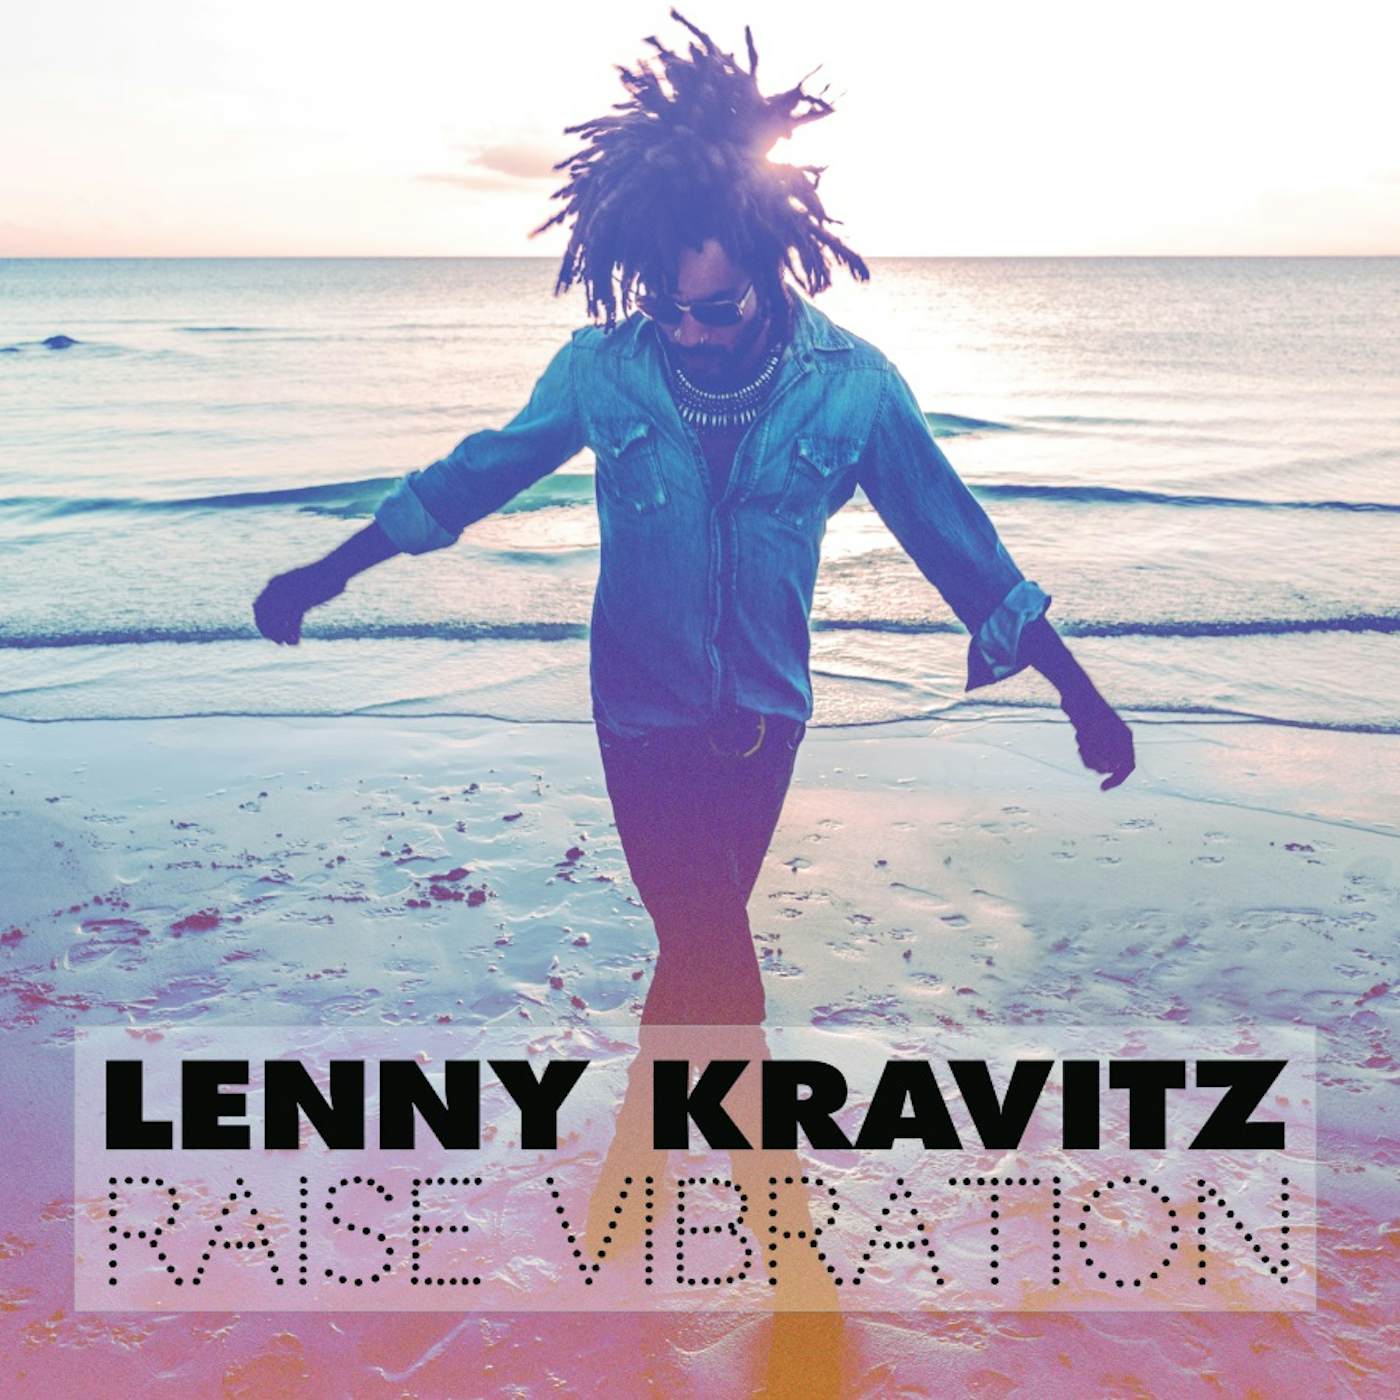 Lenny Kravitz Raise Vibration Vinyl Record